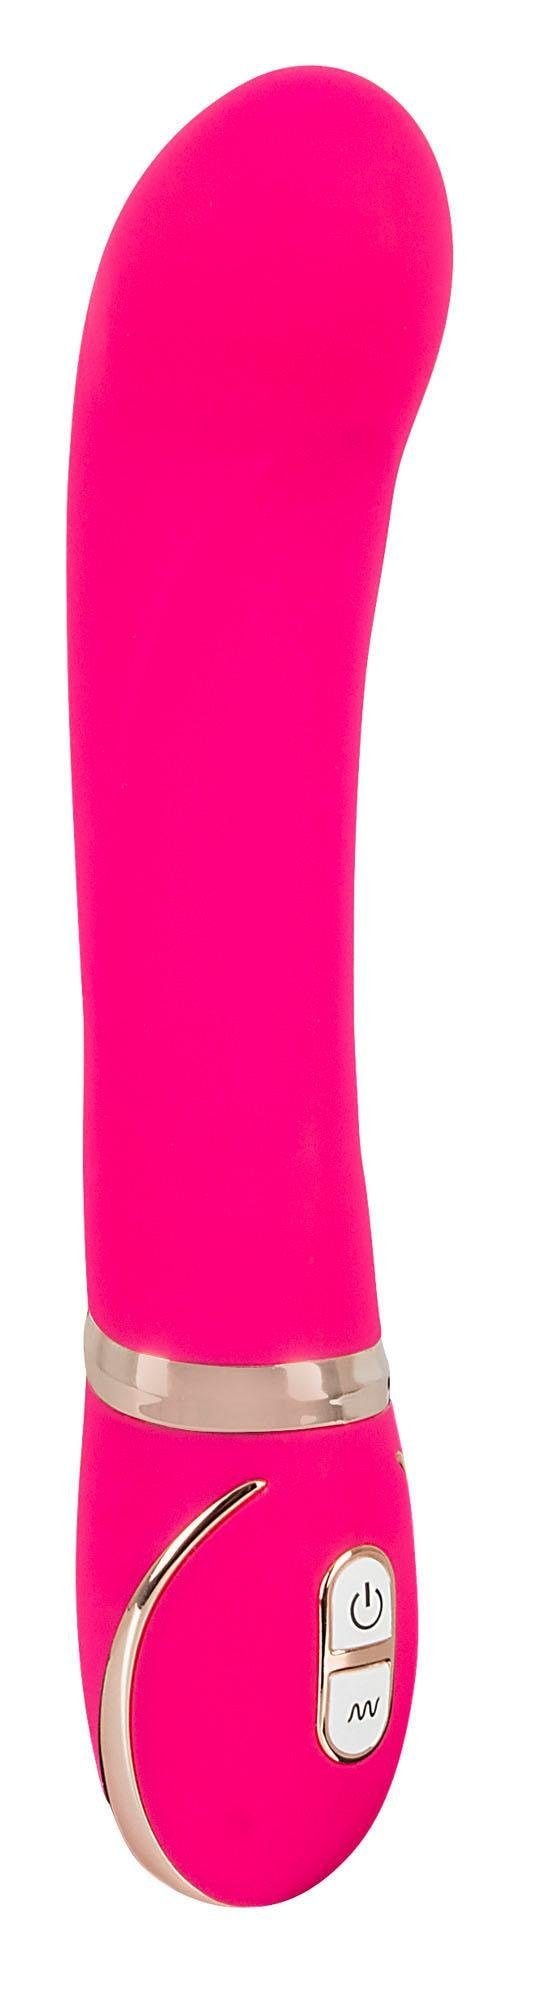 G-Punkt-Vibrator »Front Row Pink«, wasserdicht